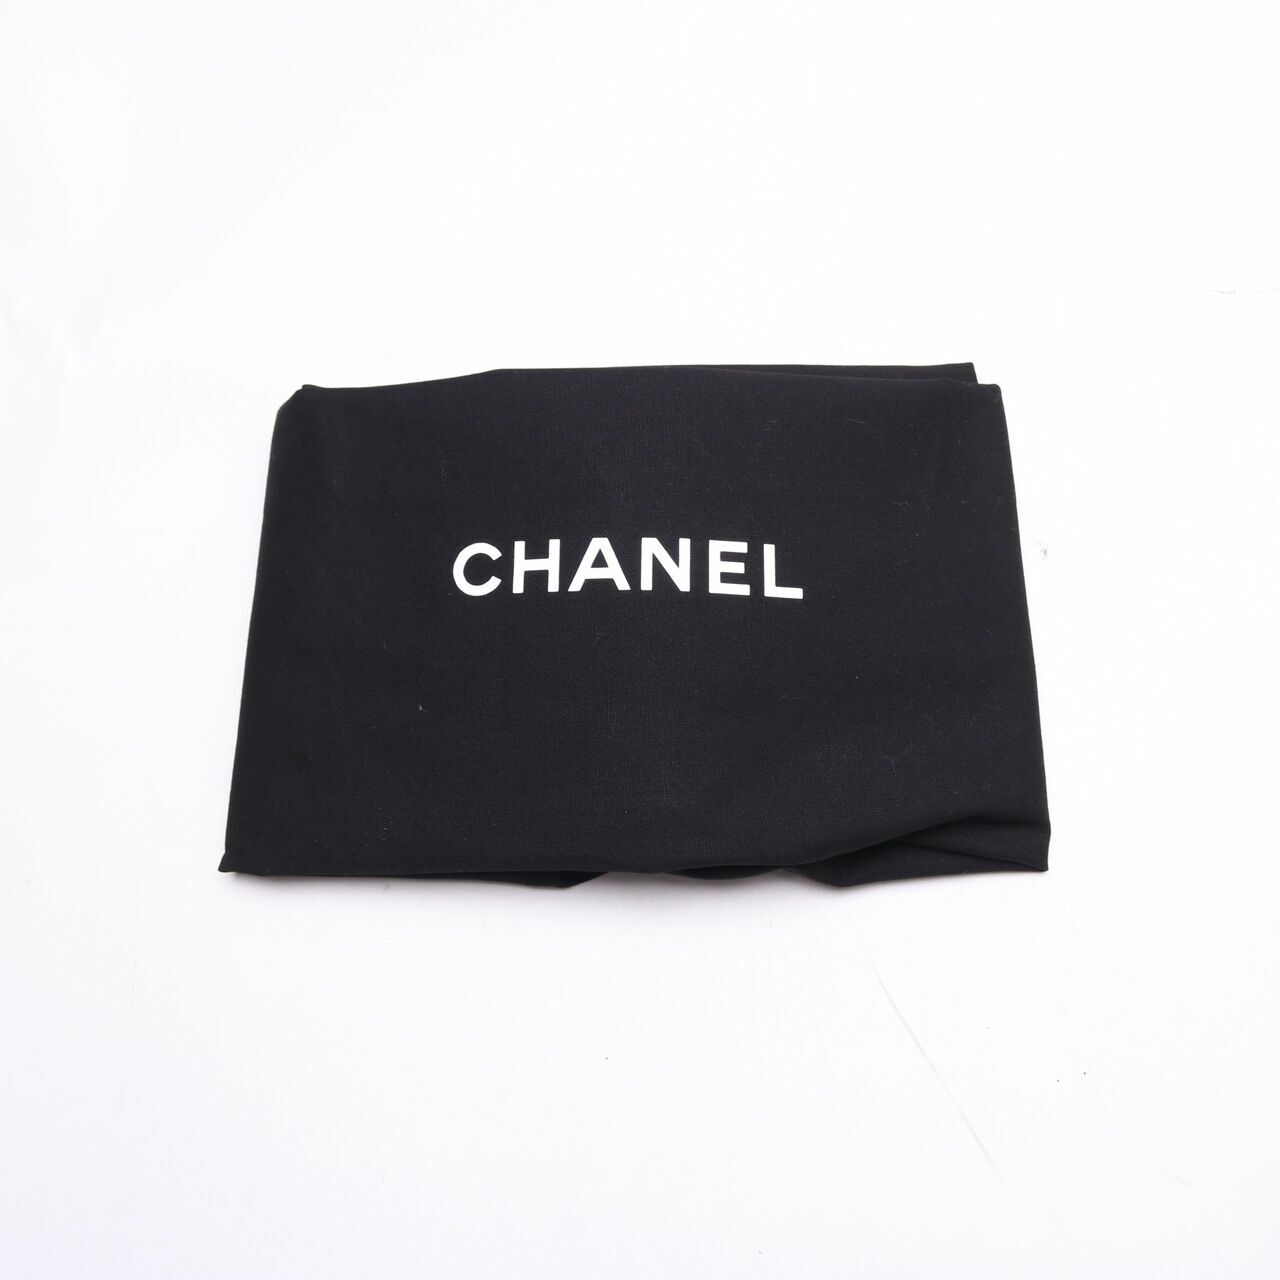 Chanel Deauville Rue Cambon Black Tote Bag